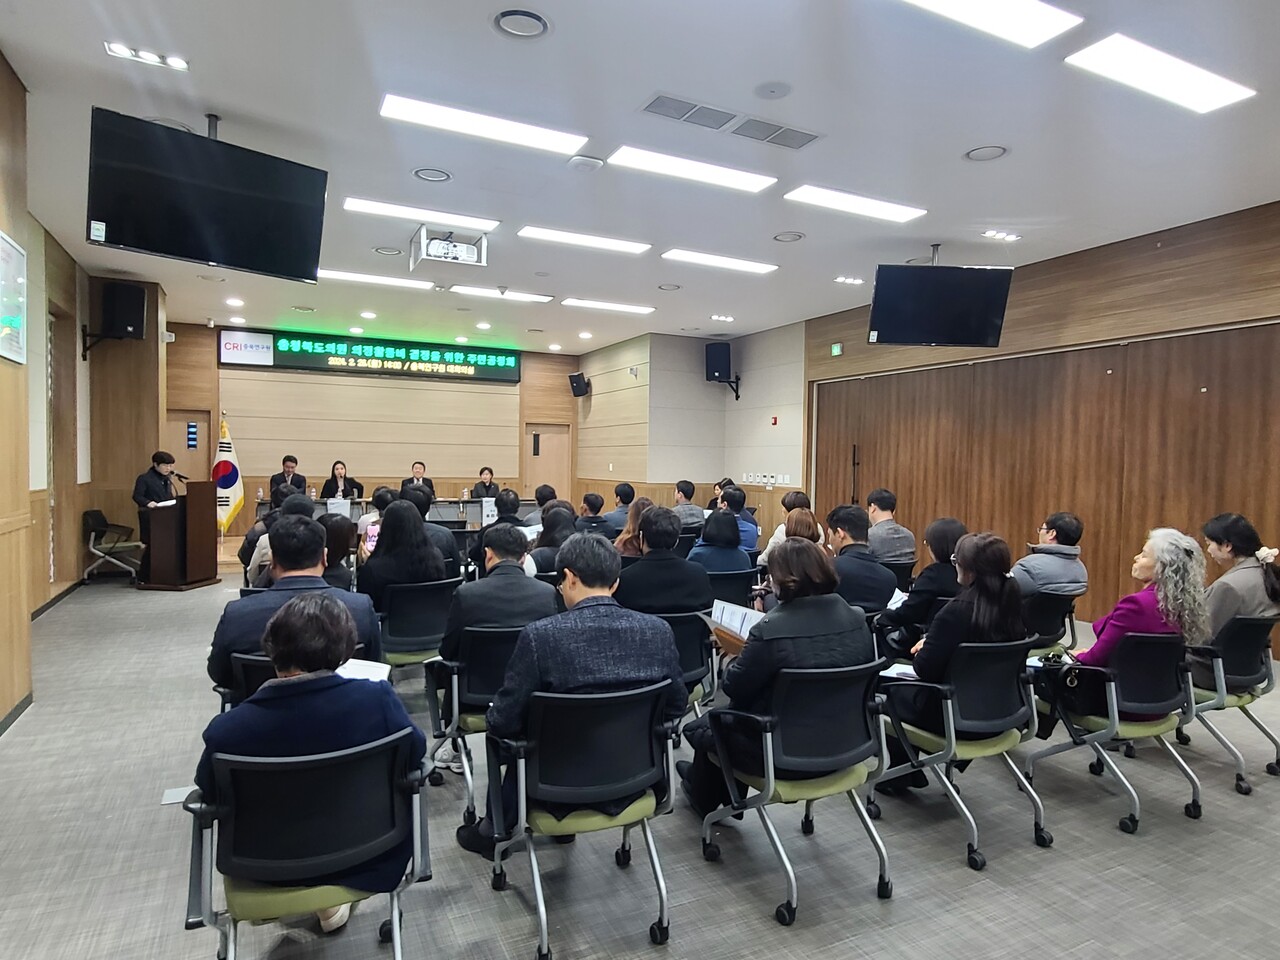 ‘충북도의원 의정활동비 결정을 위한 주민 공청회’에 참석한 주민들. 한지혜 기자.